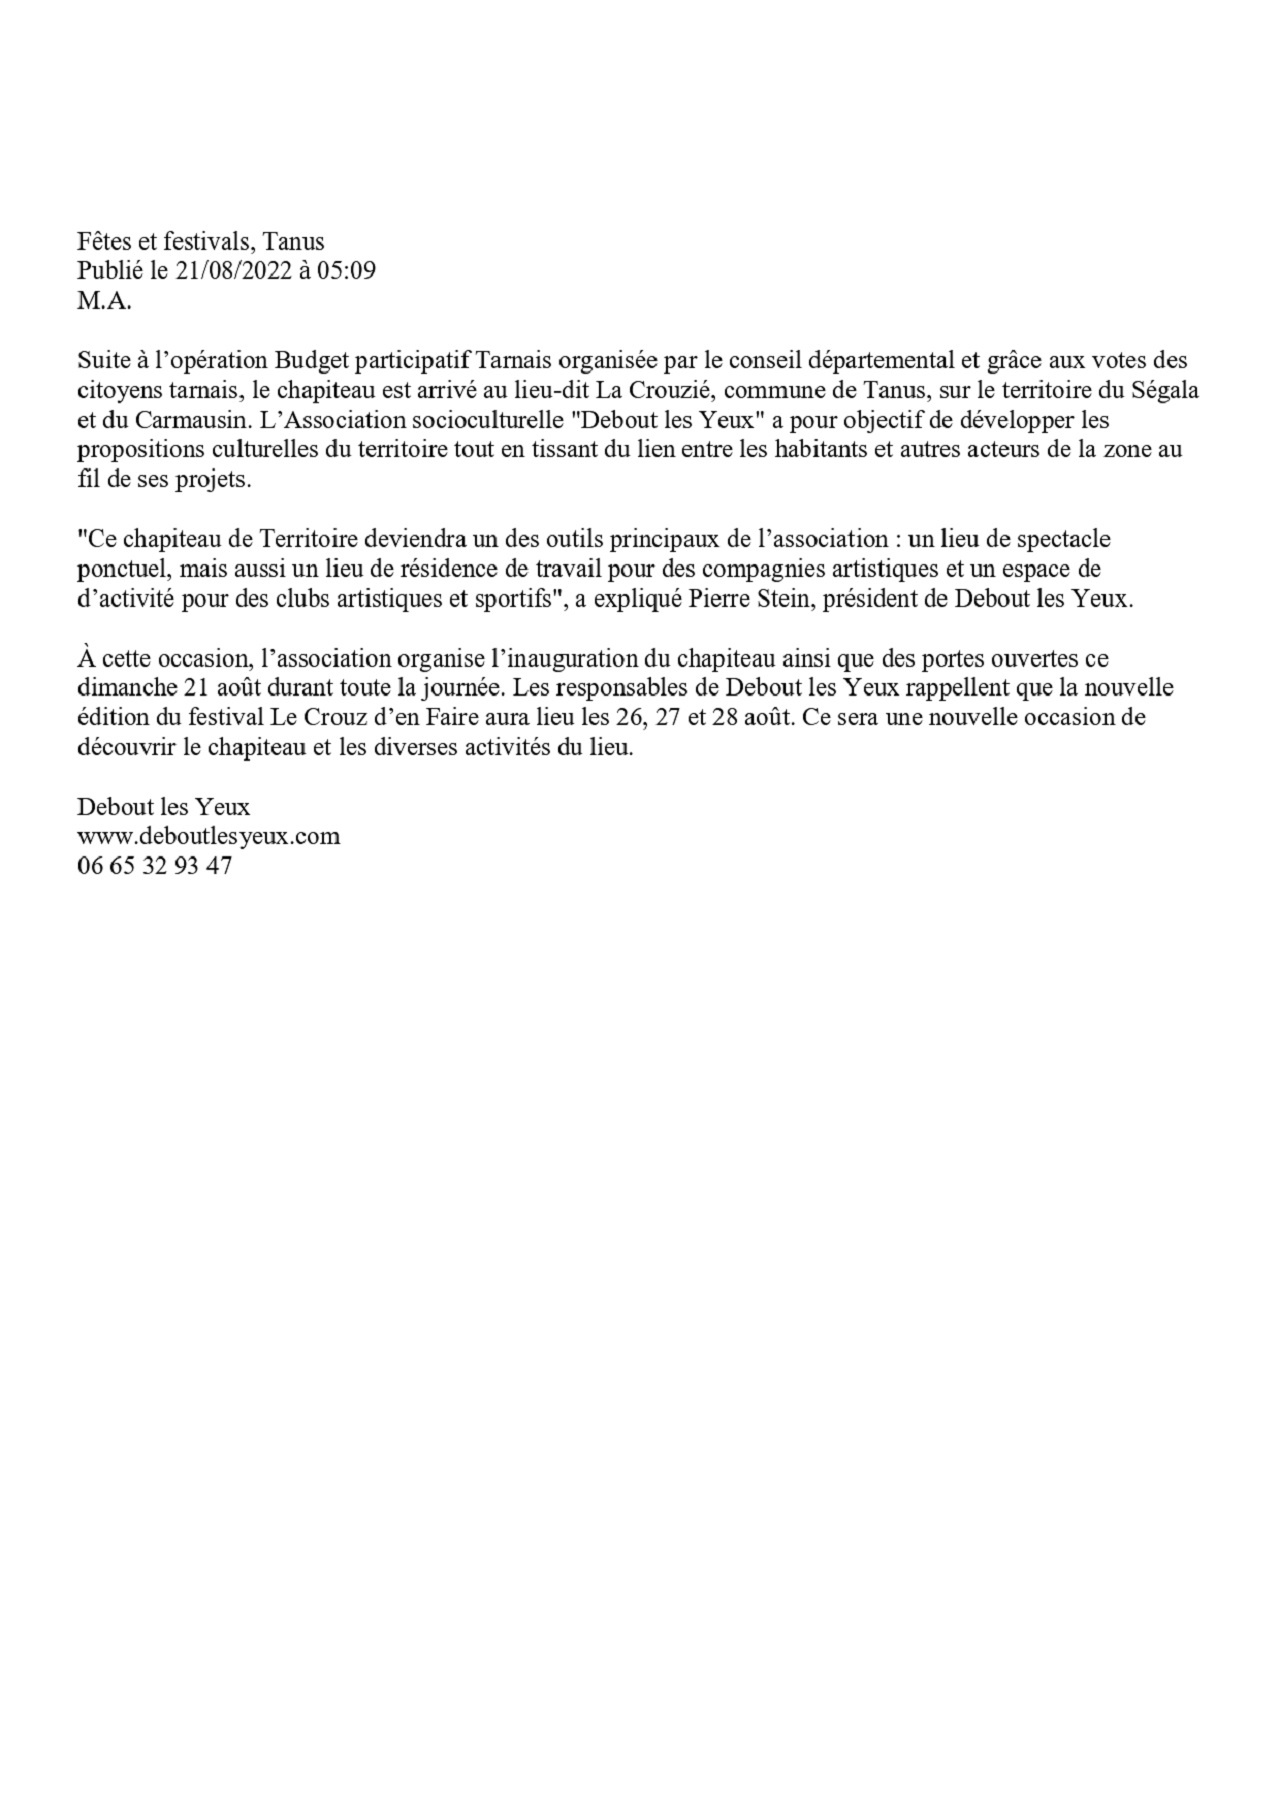 Chapiteau en Territoire 5 Inauguration La Dépêche du Midi 21 AOU 2022_page-0002.jpg